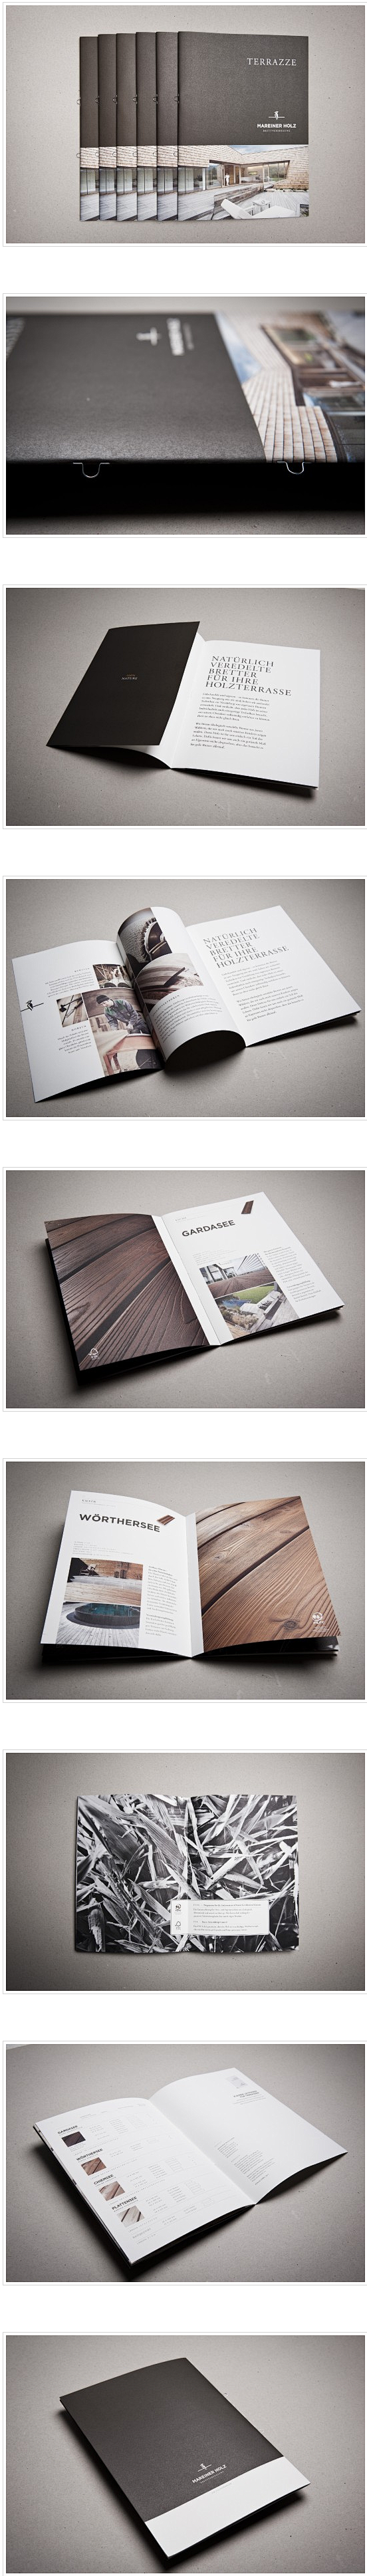 最具创意的画册设计作品集(3) - 设计...